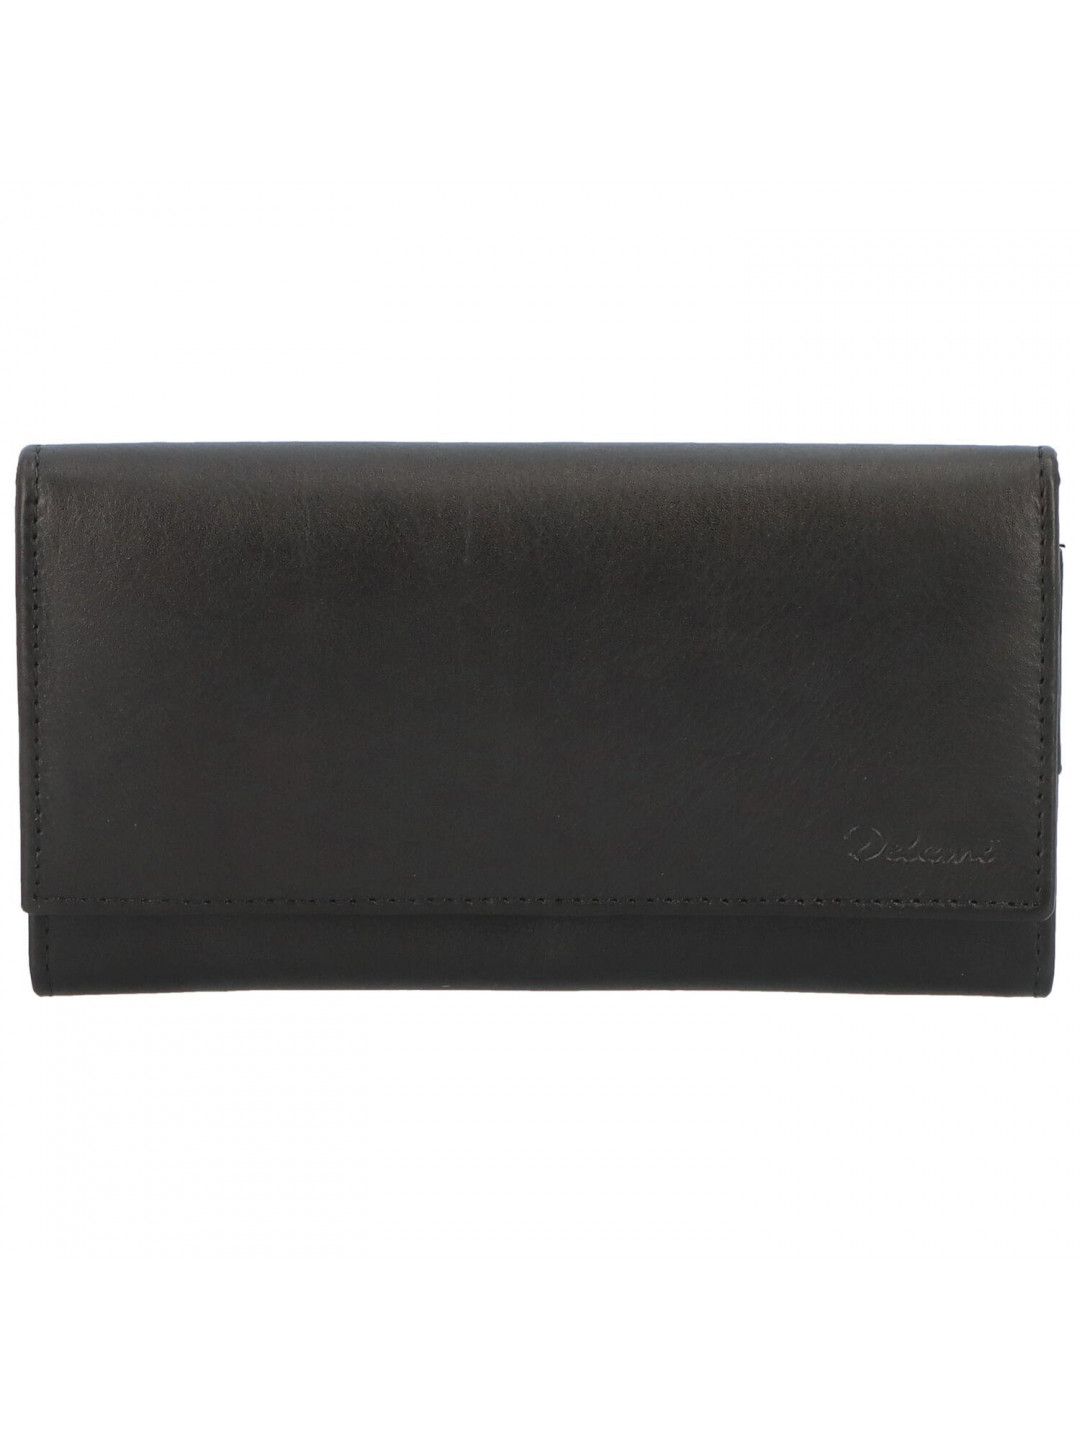 Klasická dámská kožená peněženka Claudia černá